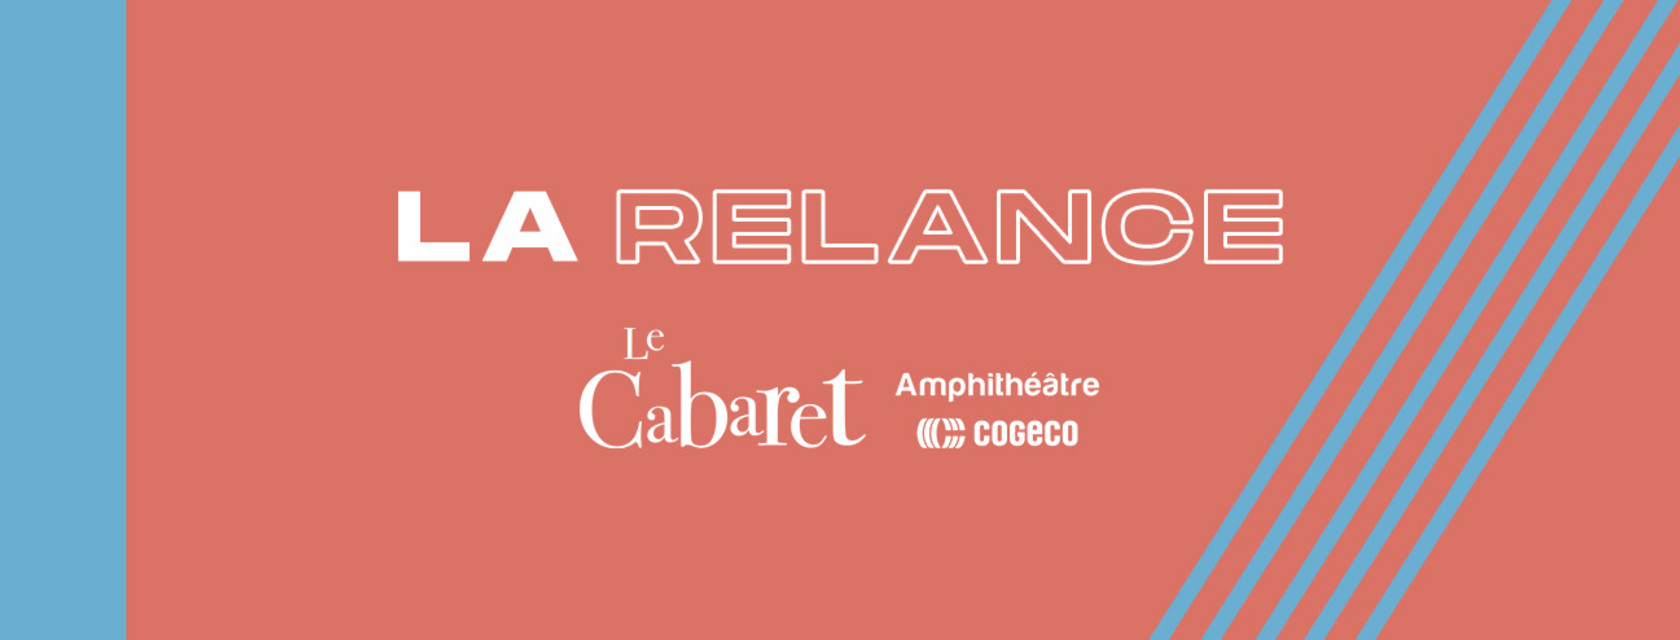 Deux spectacles s’ajoutent à la programmation Relance du Cabaret de l’Amphithéâtre Cogeco : Antoine Corriveau et Flore Laurentienne